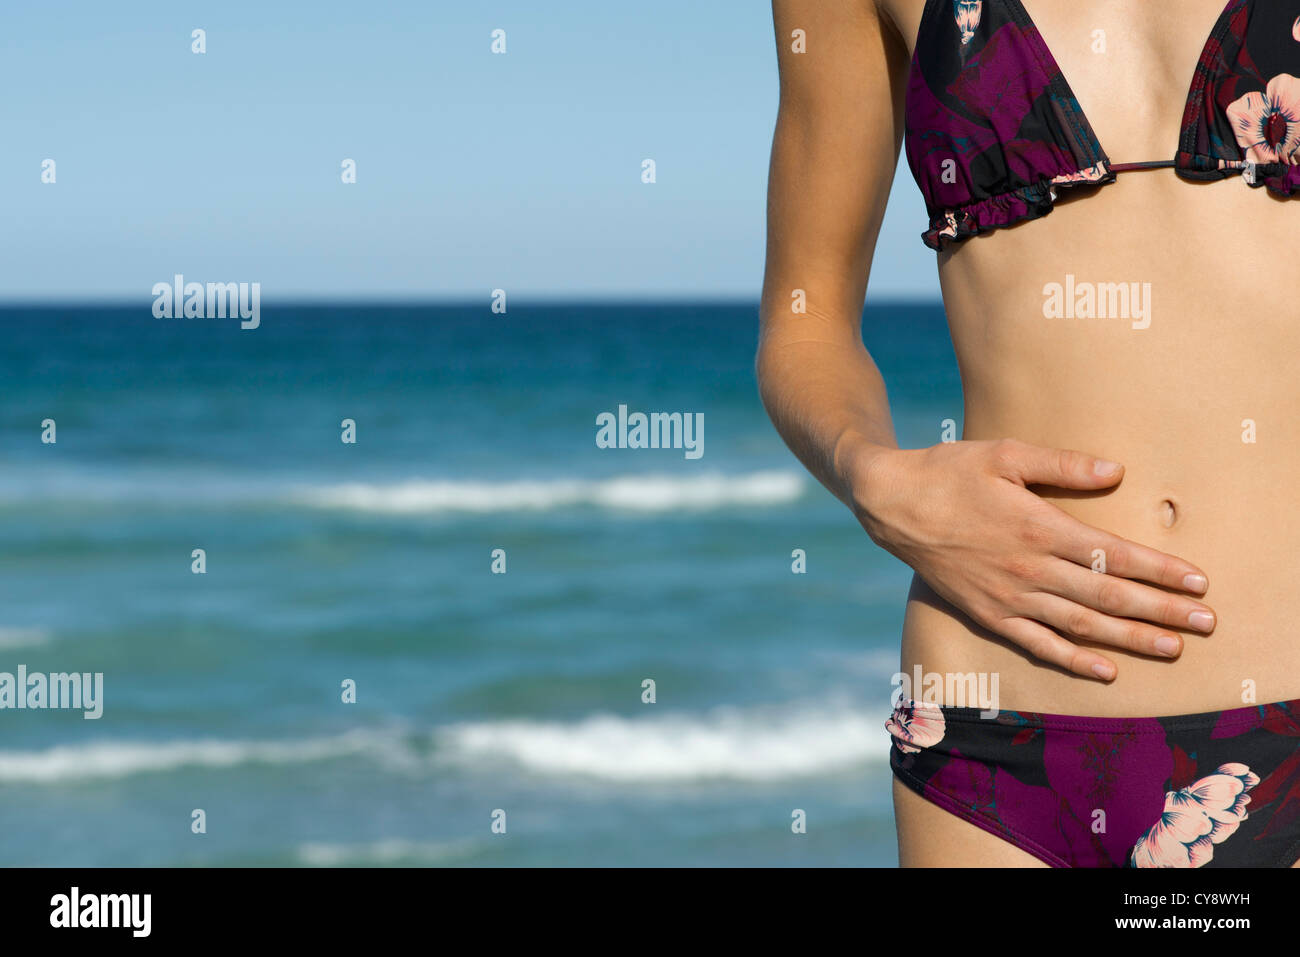 Woman in bikini, mid section Stock Photo